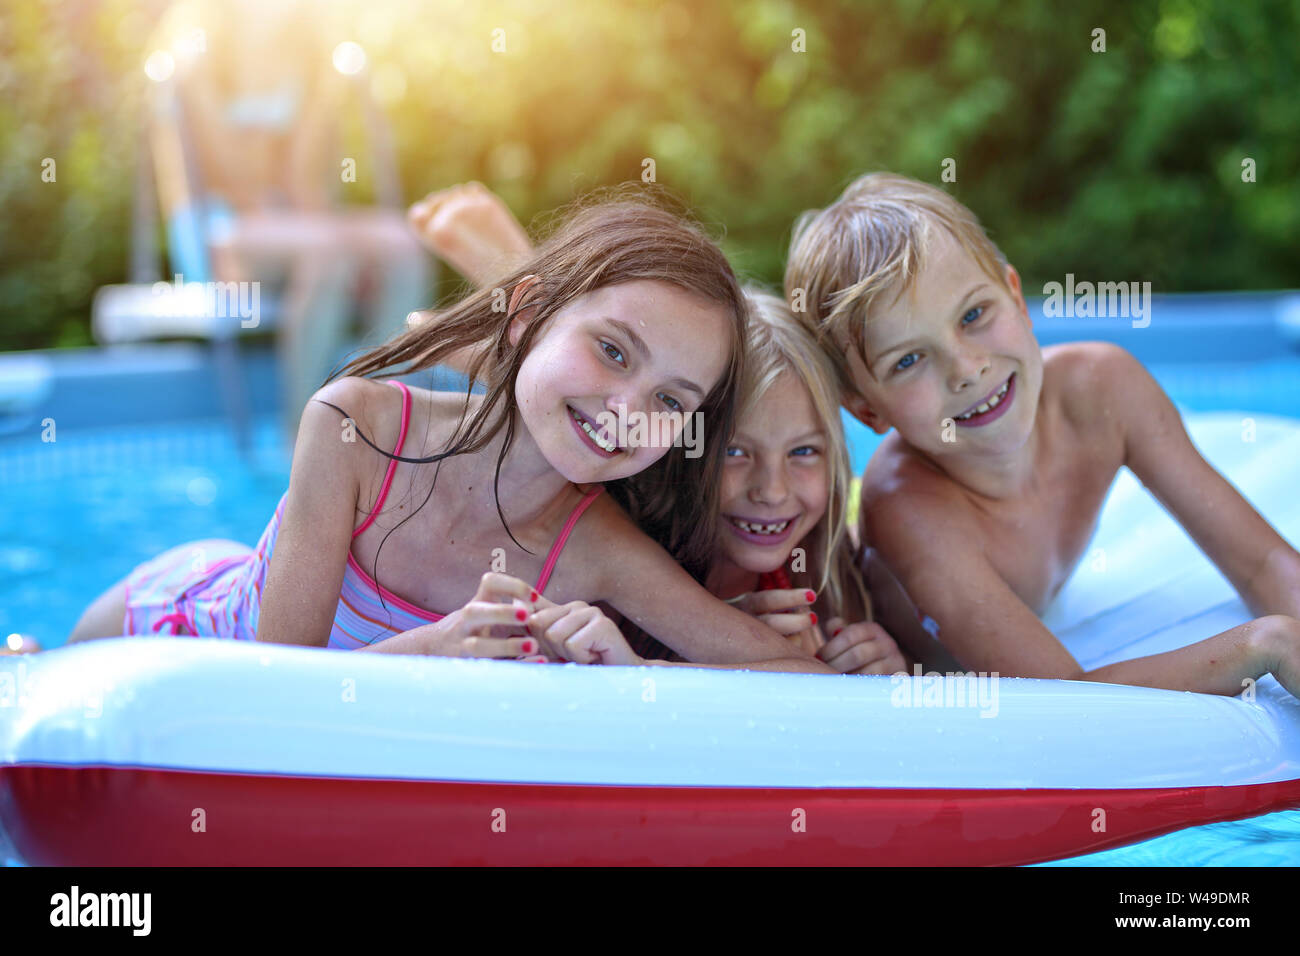 Kinder Haben Spaß Im Pool An Einem Heißen Tag Stockfotografie Alamy